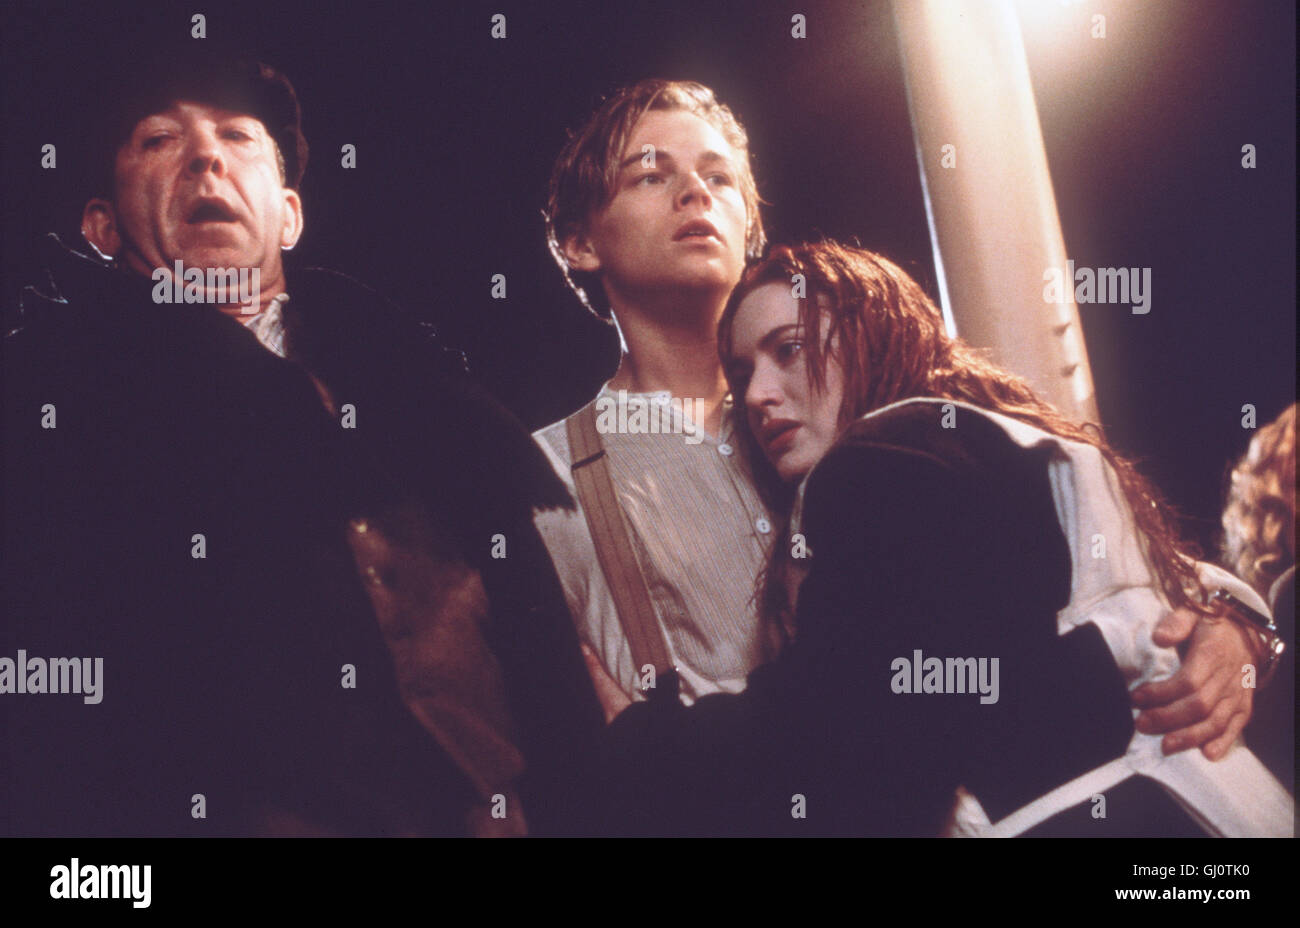 TITANIC- Szene: durch den Zusammenstoß Mit einem Eisberg beginnt die Titanic zu sinken. Rose (Kate Winslet) soll in eines der wenigen Rettungsboote steigen, doch sie verrà sich nicht von ihrem geliebten Jack (Leonardo Di Caprio) trennen. Regie: James Cameron aka. Titanic Foto Stock